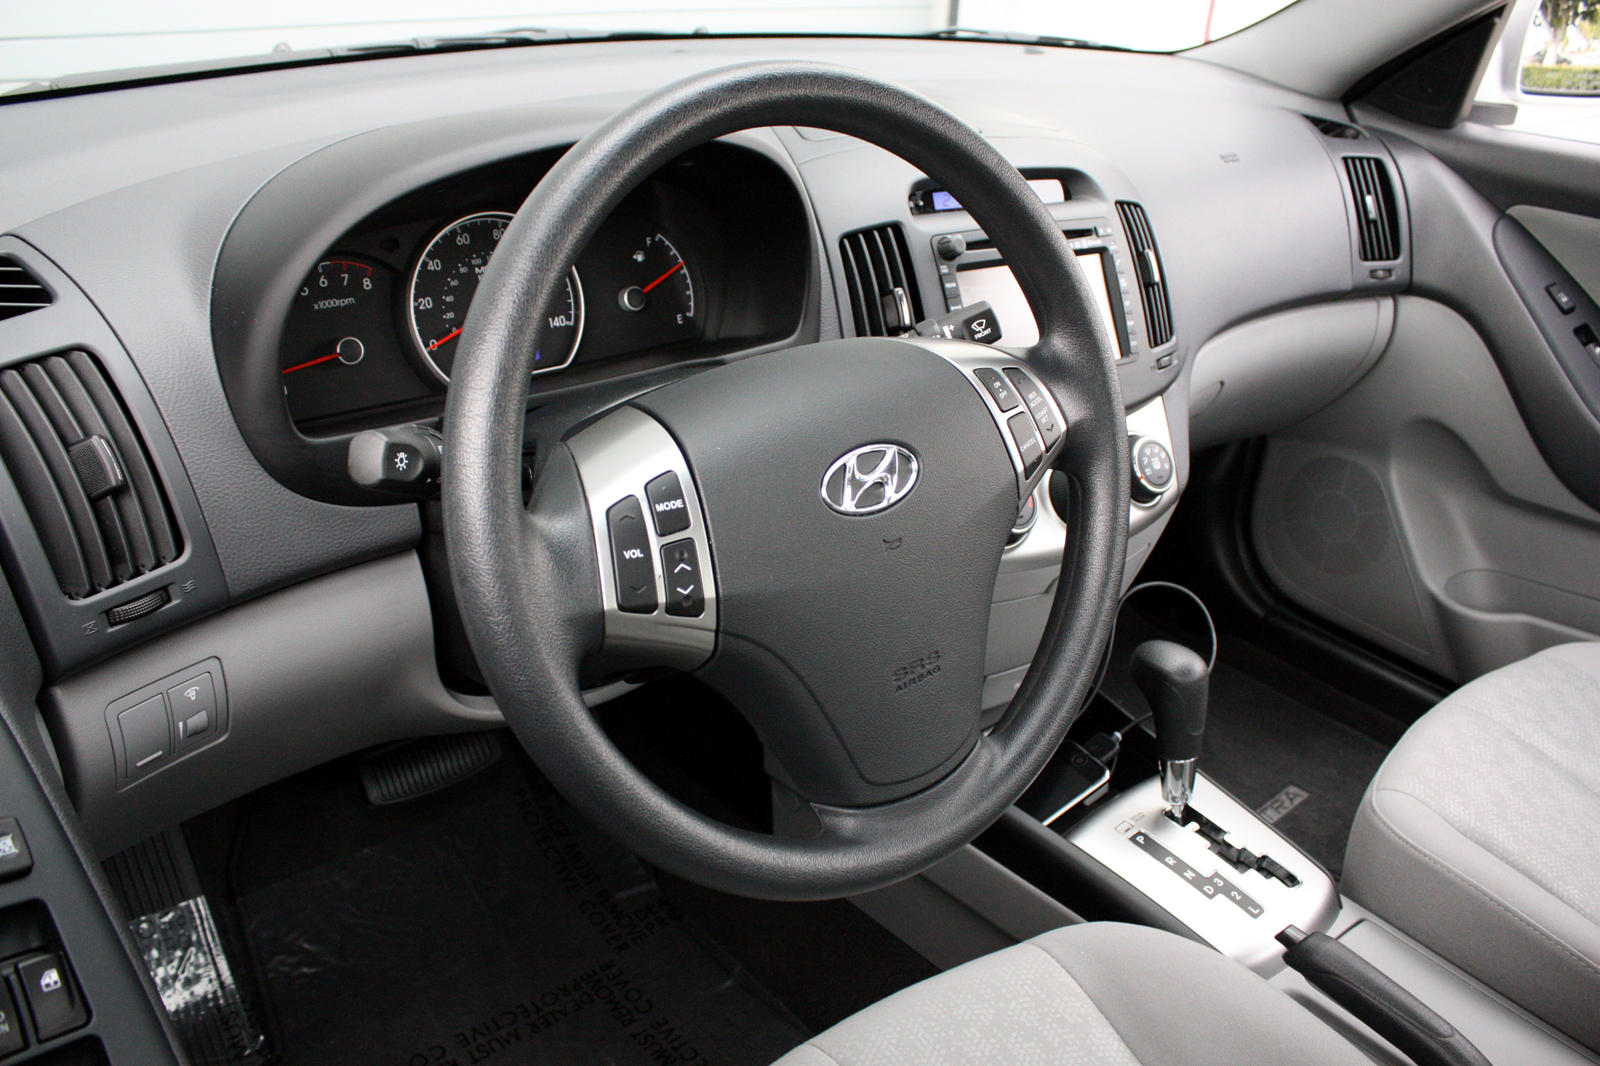 2008 Hyundai Elantra Interior Photos | CarBuzz